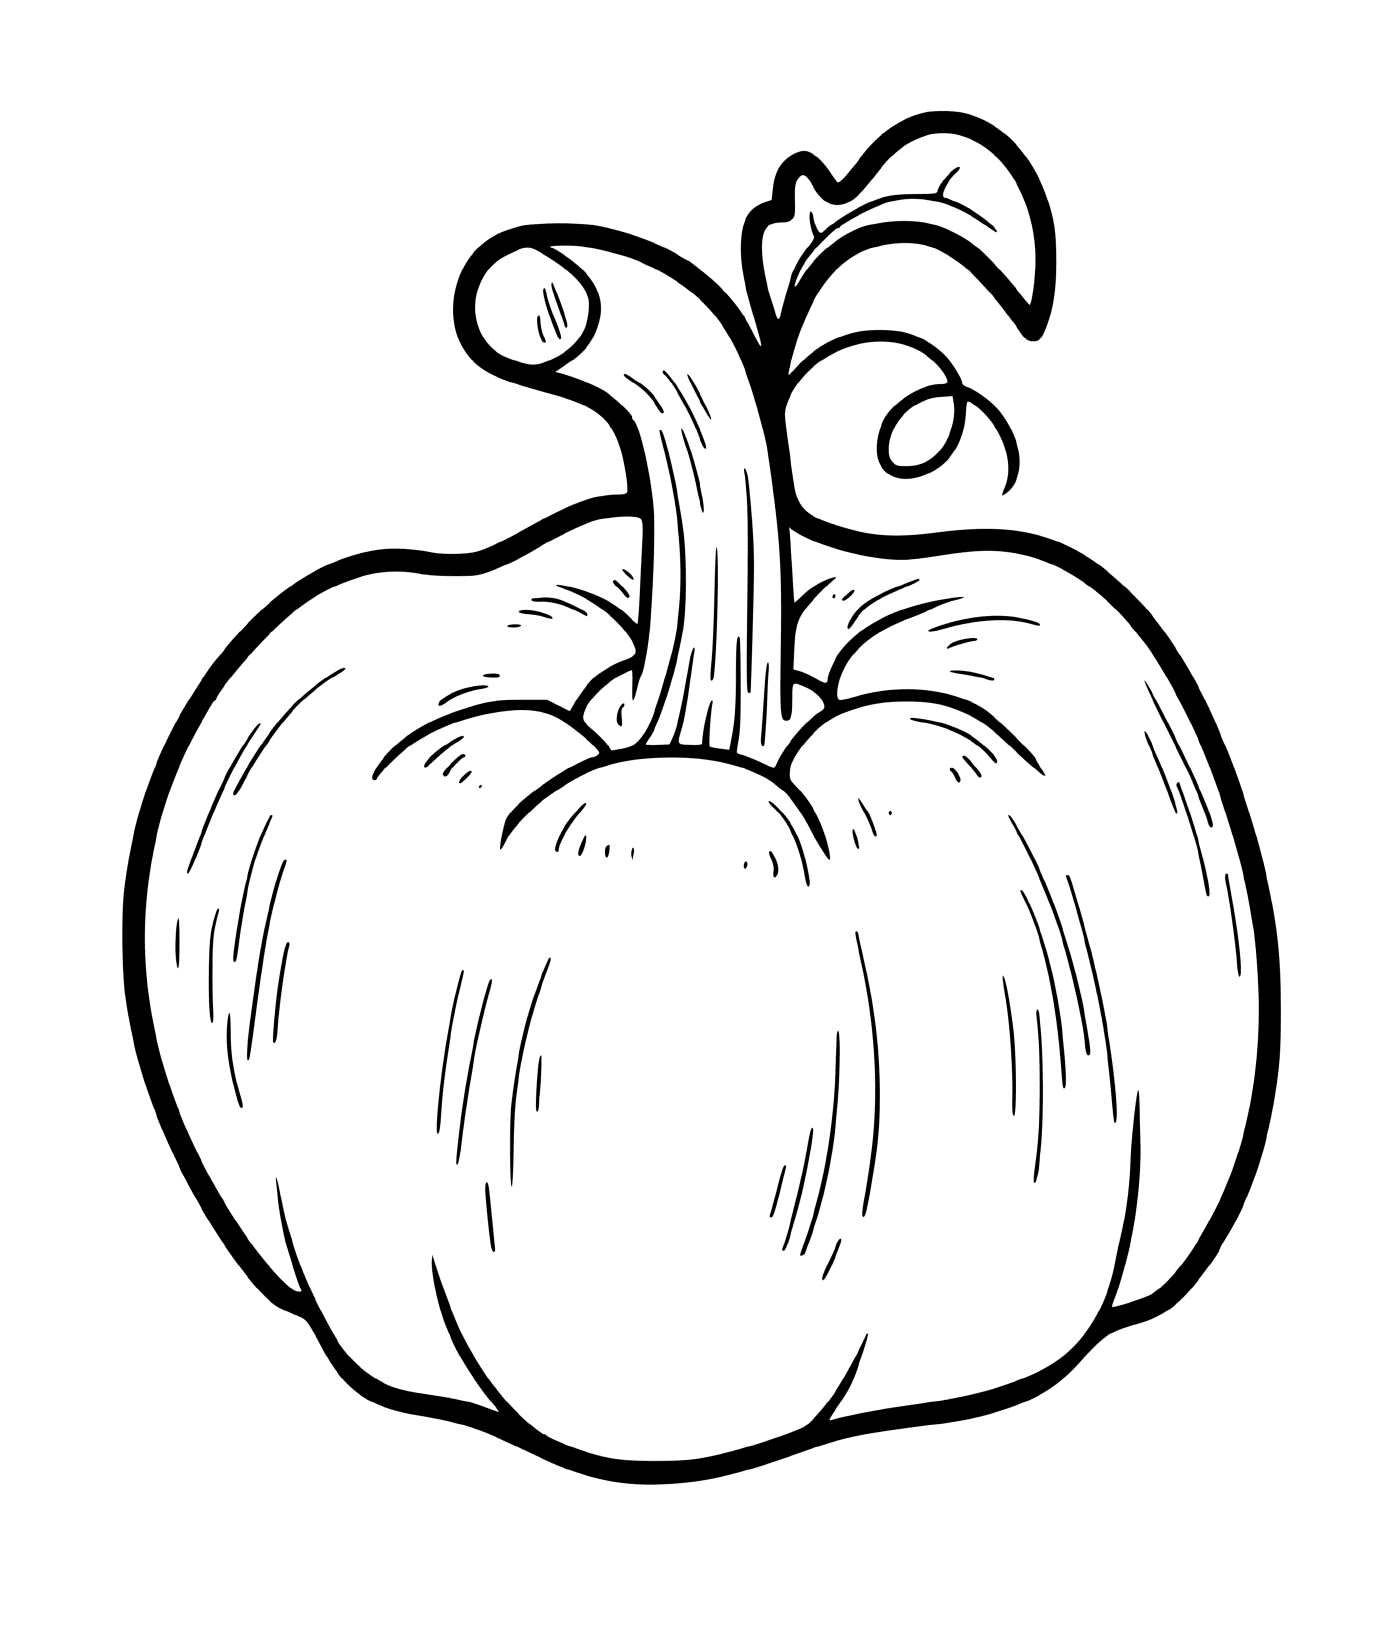  A real annual pumpkin 